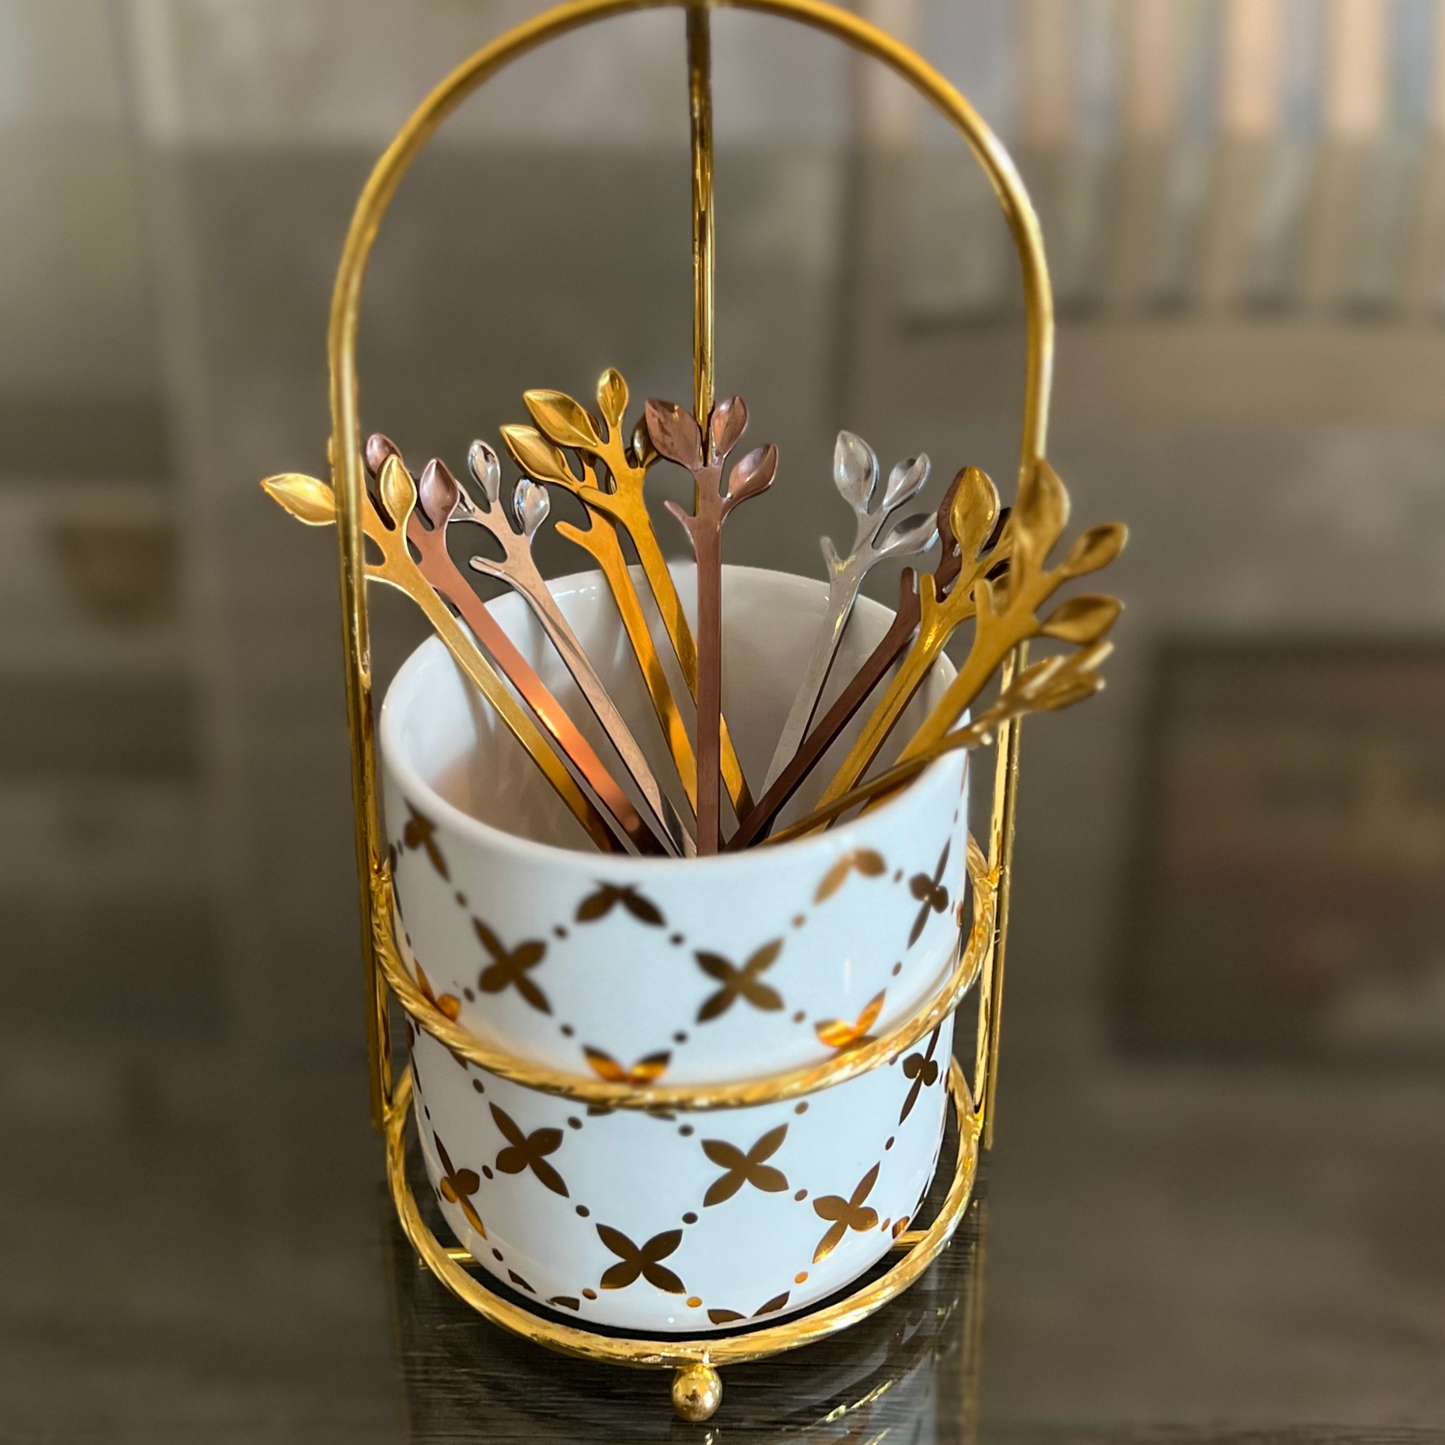 Leaf Tea Spoons & Fruit Forks - Rose Gold & Gold Combo